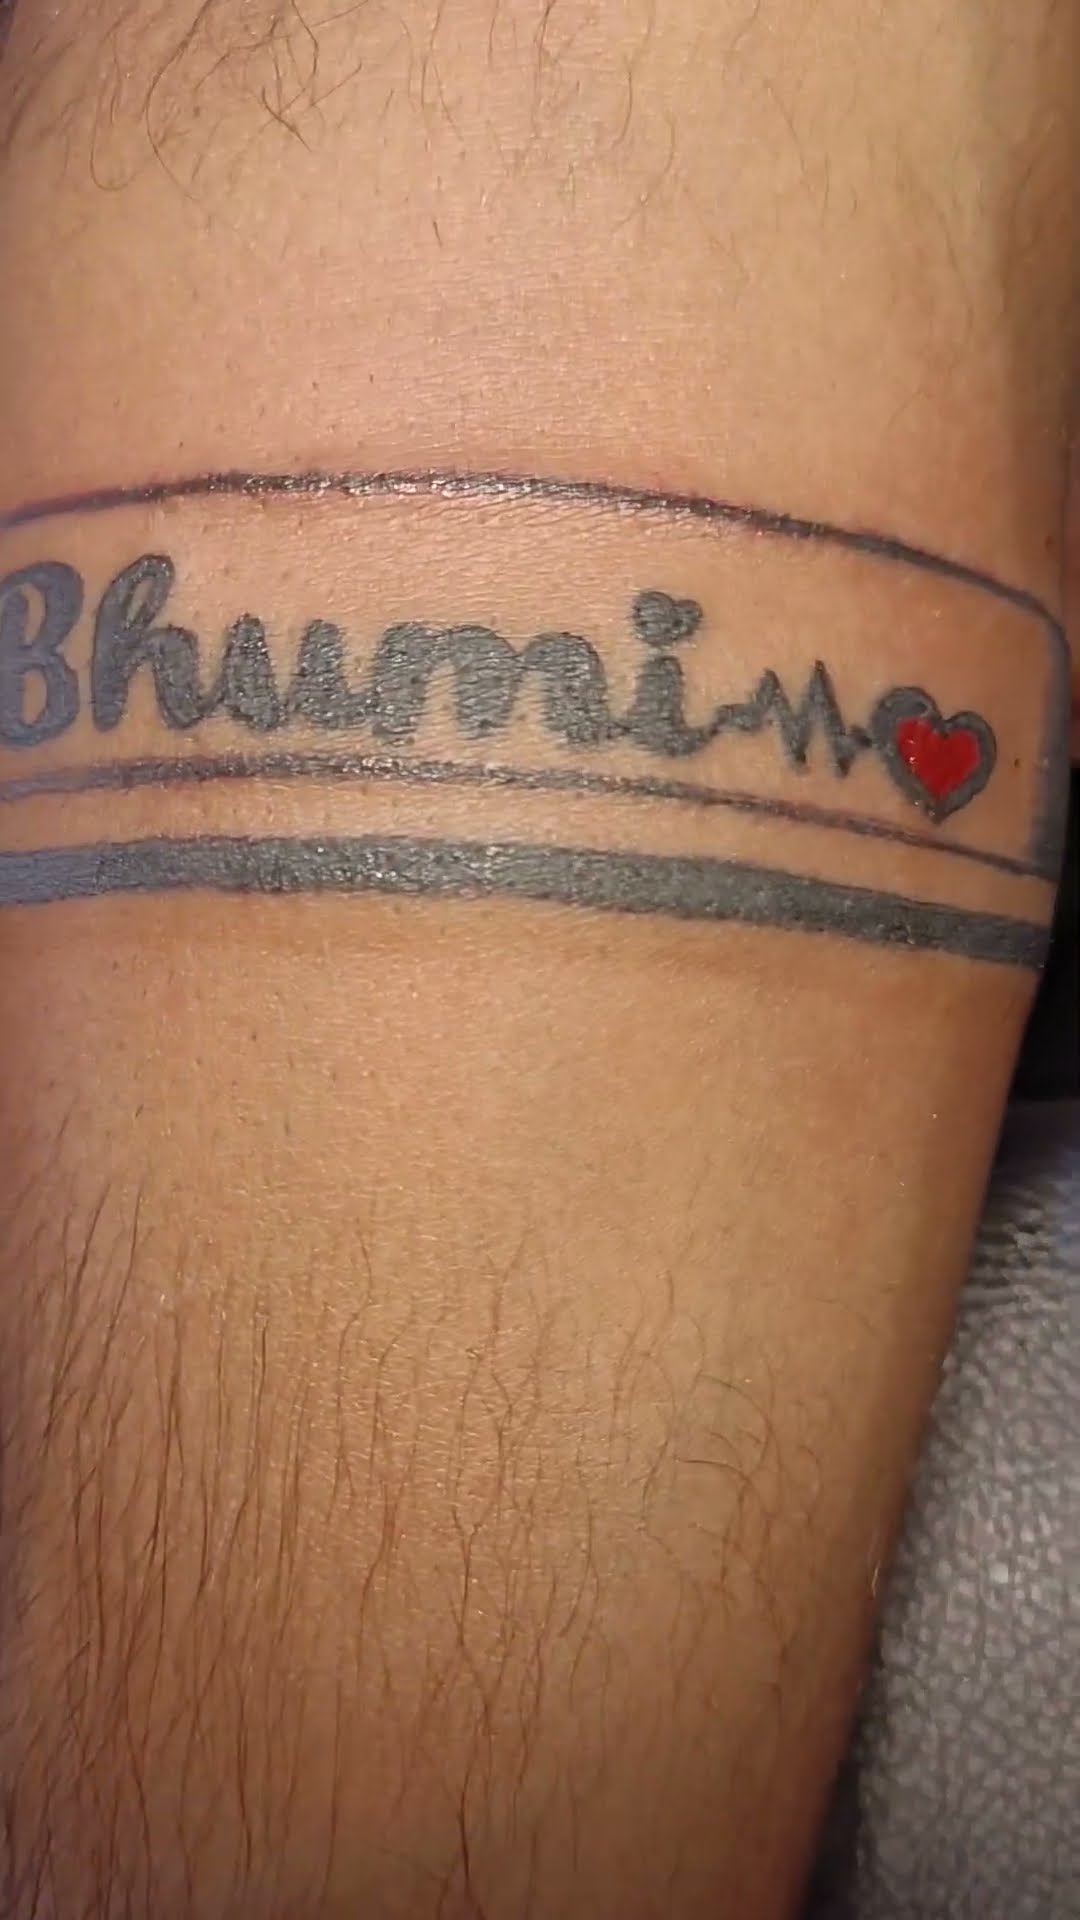 Vailantineday#gift# - Shivaay tattoo's | Facebook